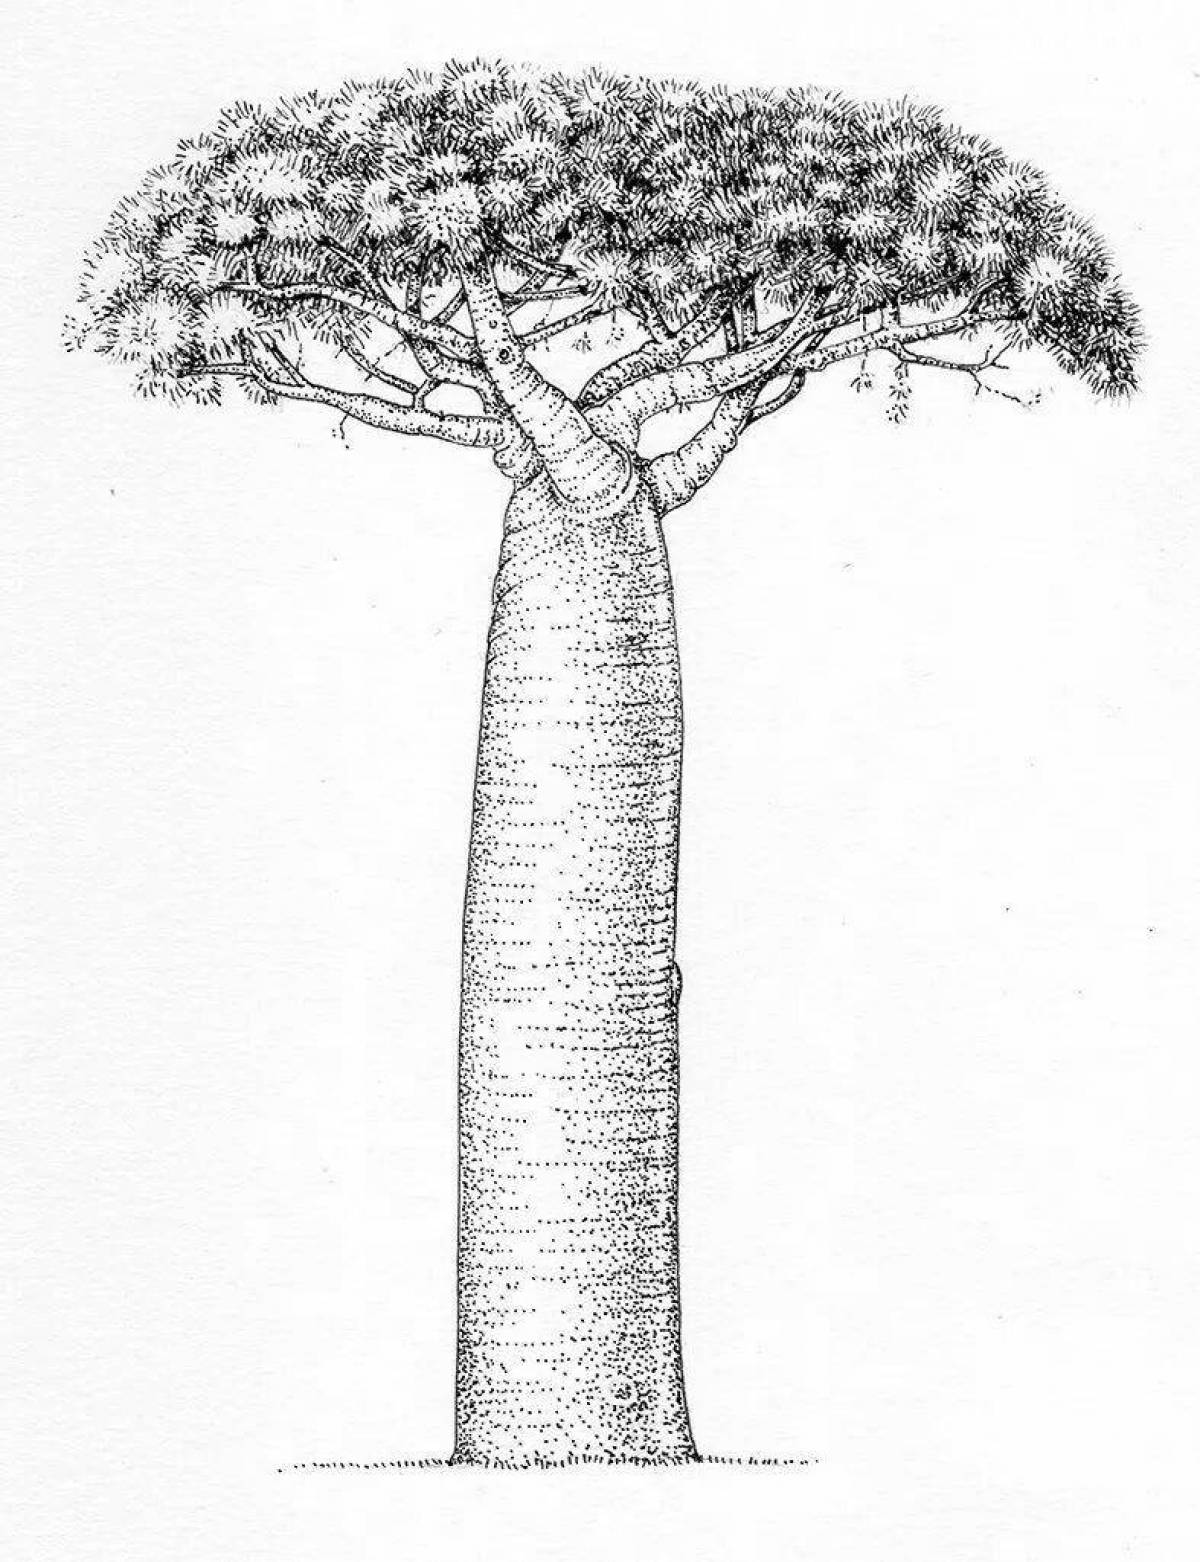 100 000 векторов и графики по запросу Раскраска дерево баобаб доступны в рамках роялти-фри лицензии